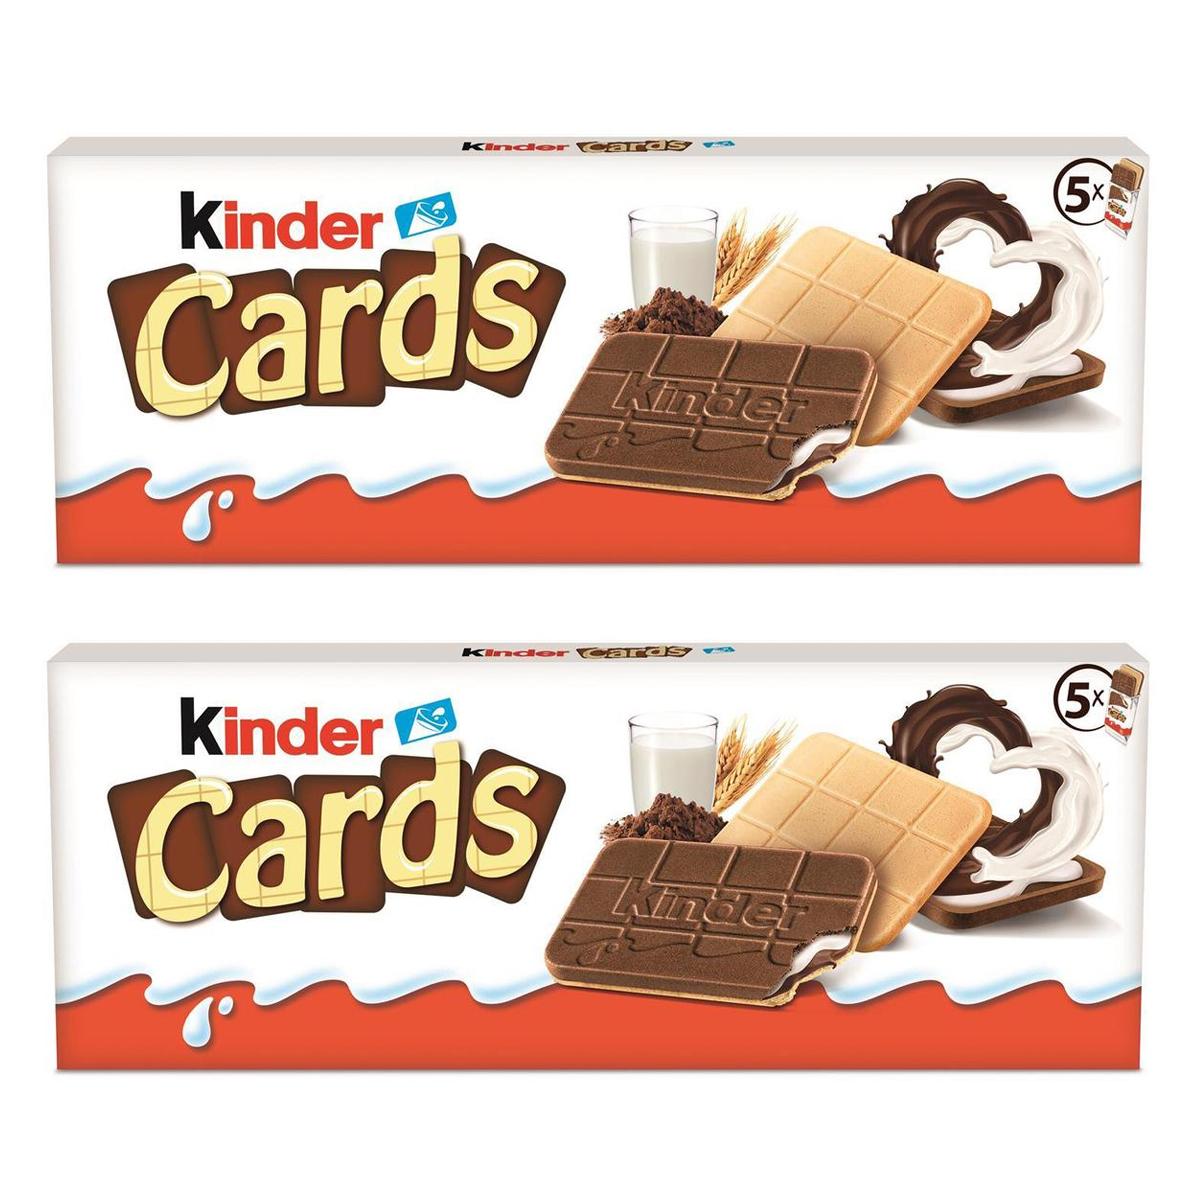 Achat / Vente Promotion Kinder Cards chocolat au lait, Lot de 2x128g